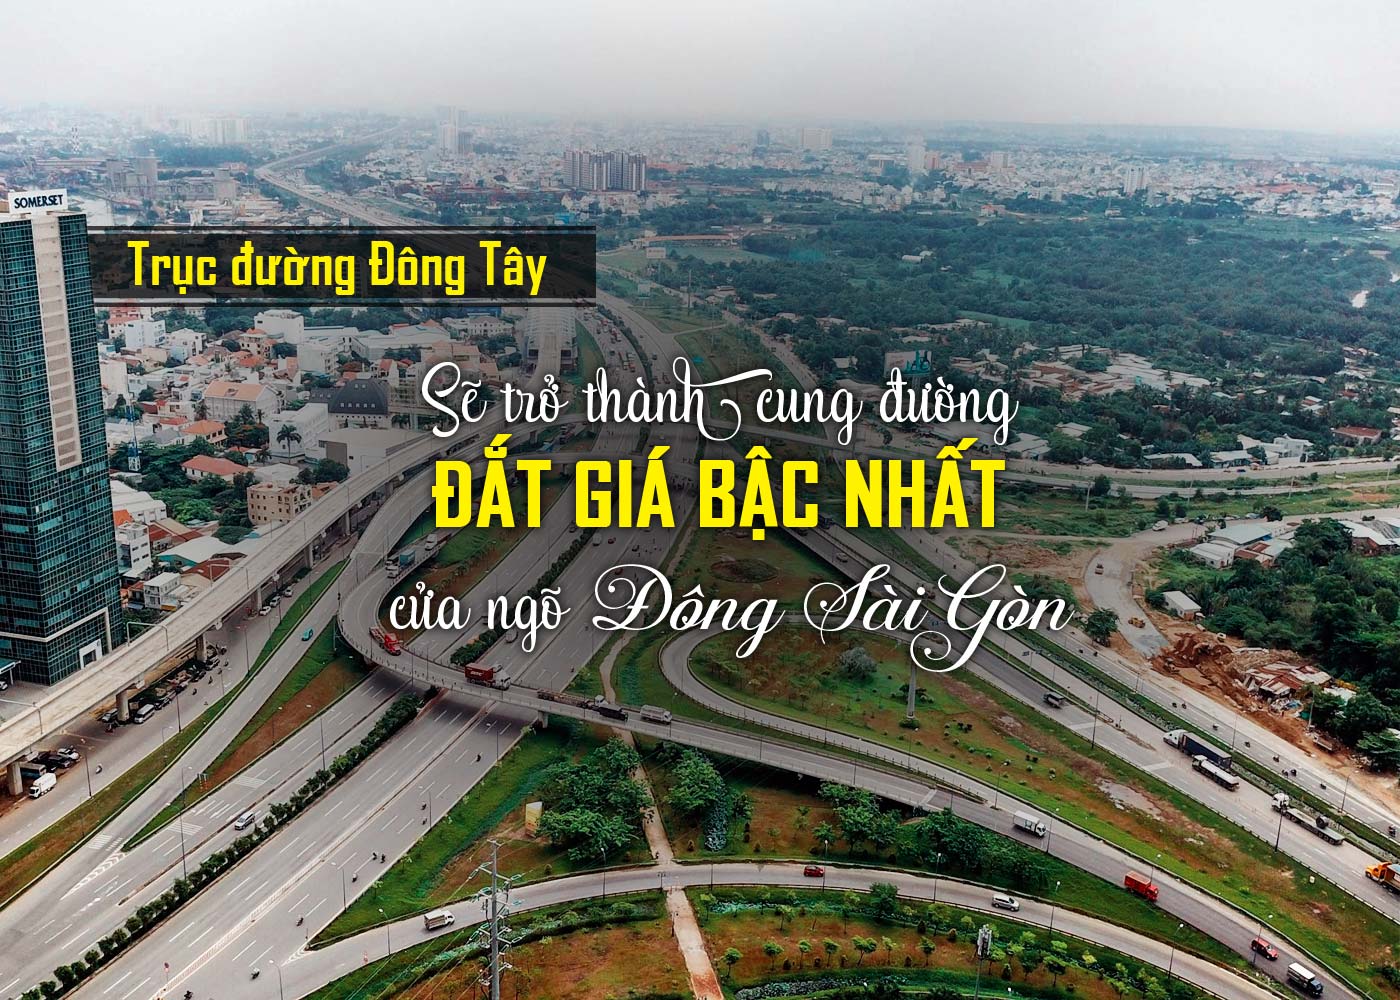 Trục đường Đông Tây sẽ trở thành cung đường đắt giá bậc nhất cửa ngõ Đông Sài Gòn - Ảnh 1